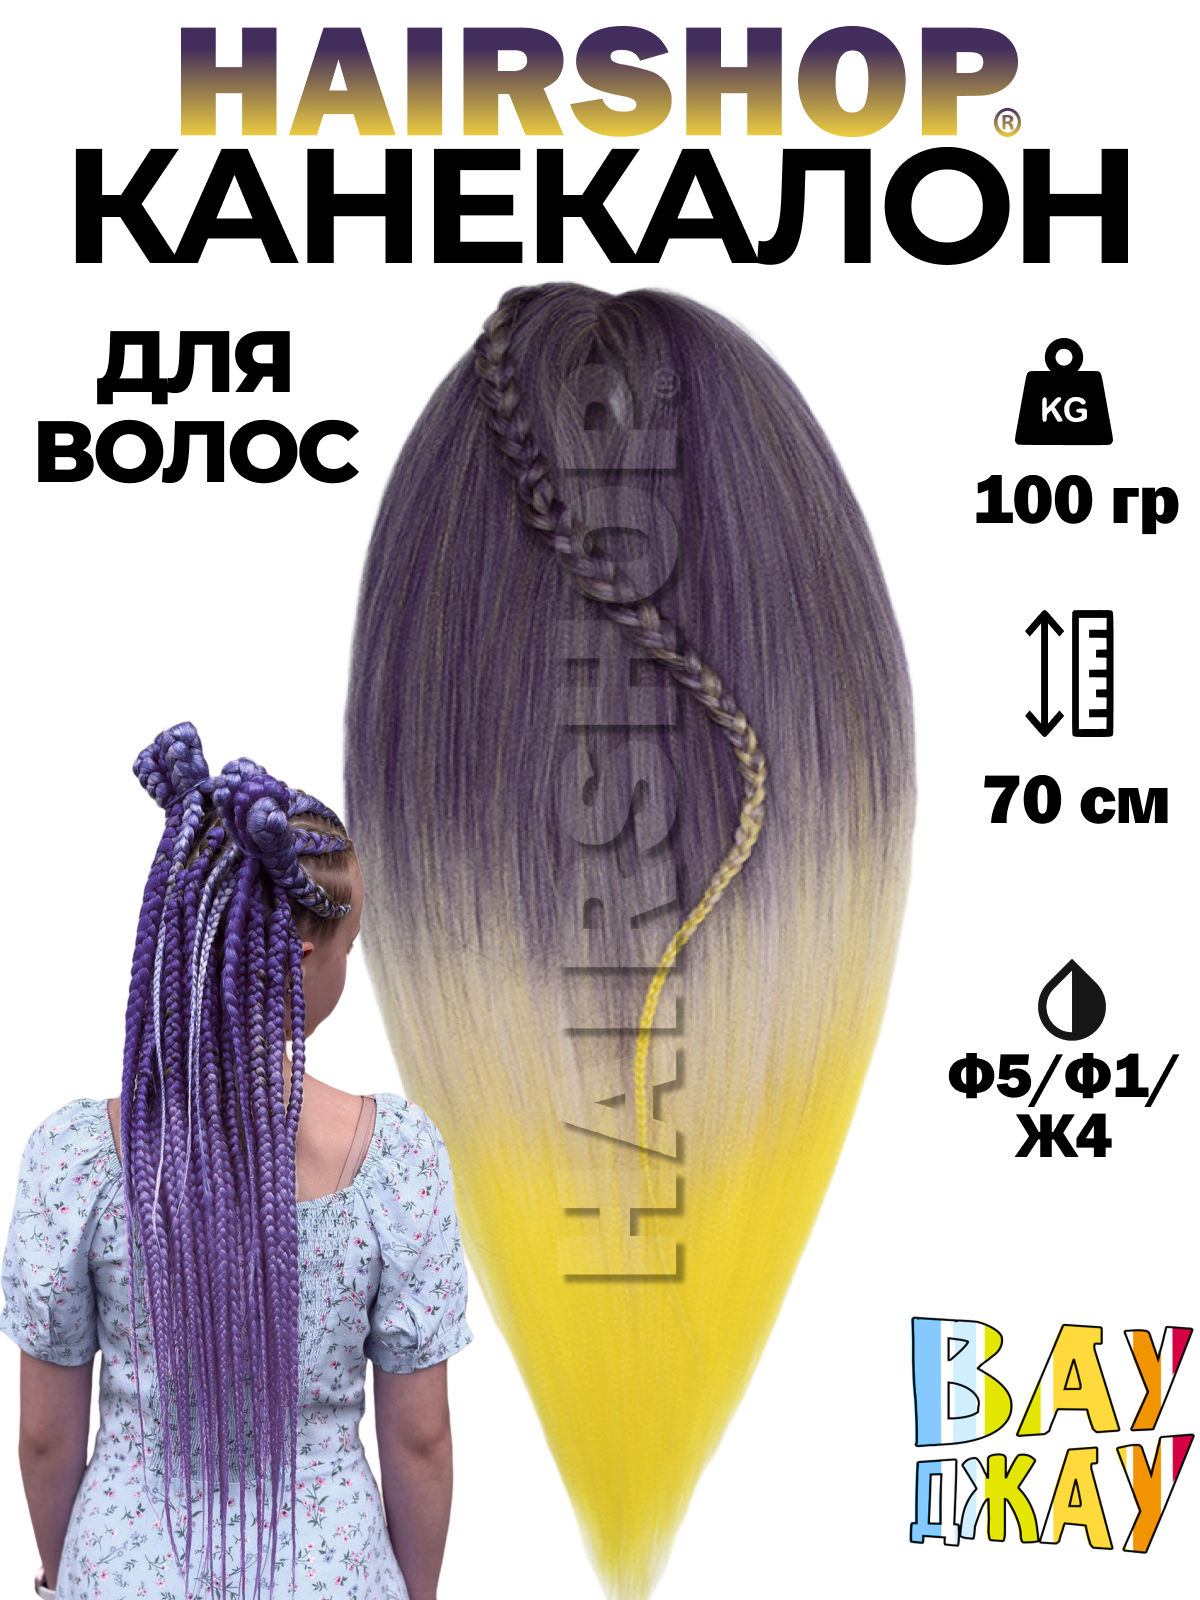 Канекалон HAIRSHOP Вау Джау Ф5-Ф1-Ж4 1,3м 100г Фиолетово-баклажановый, Фиолетовый, Желтый стойкая крем краска для волос neva natural colors 4 20 баклажановый фиолетовый 2 шт